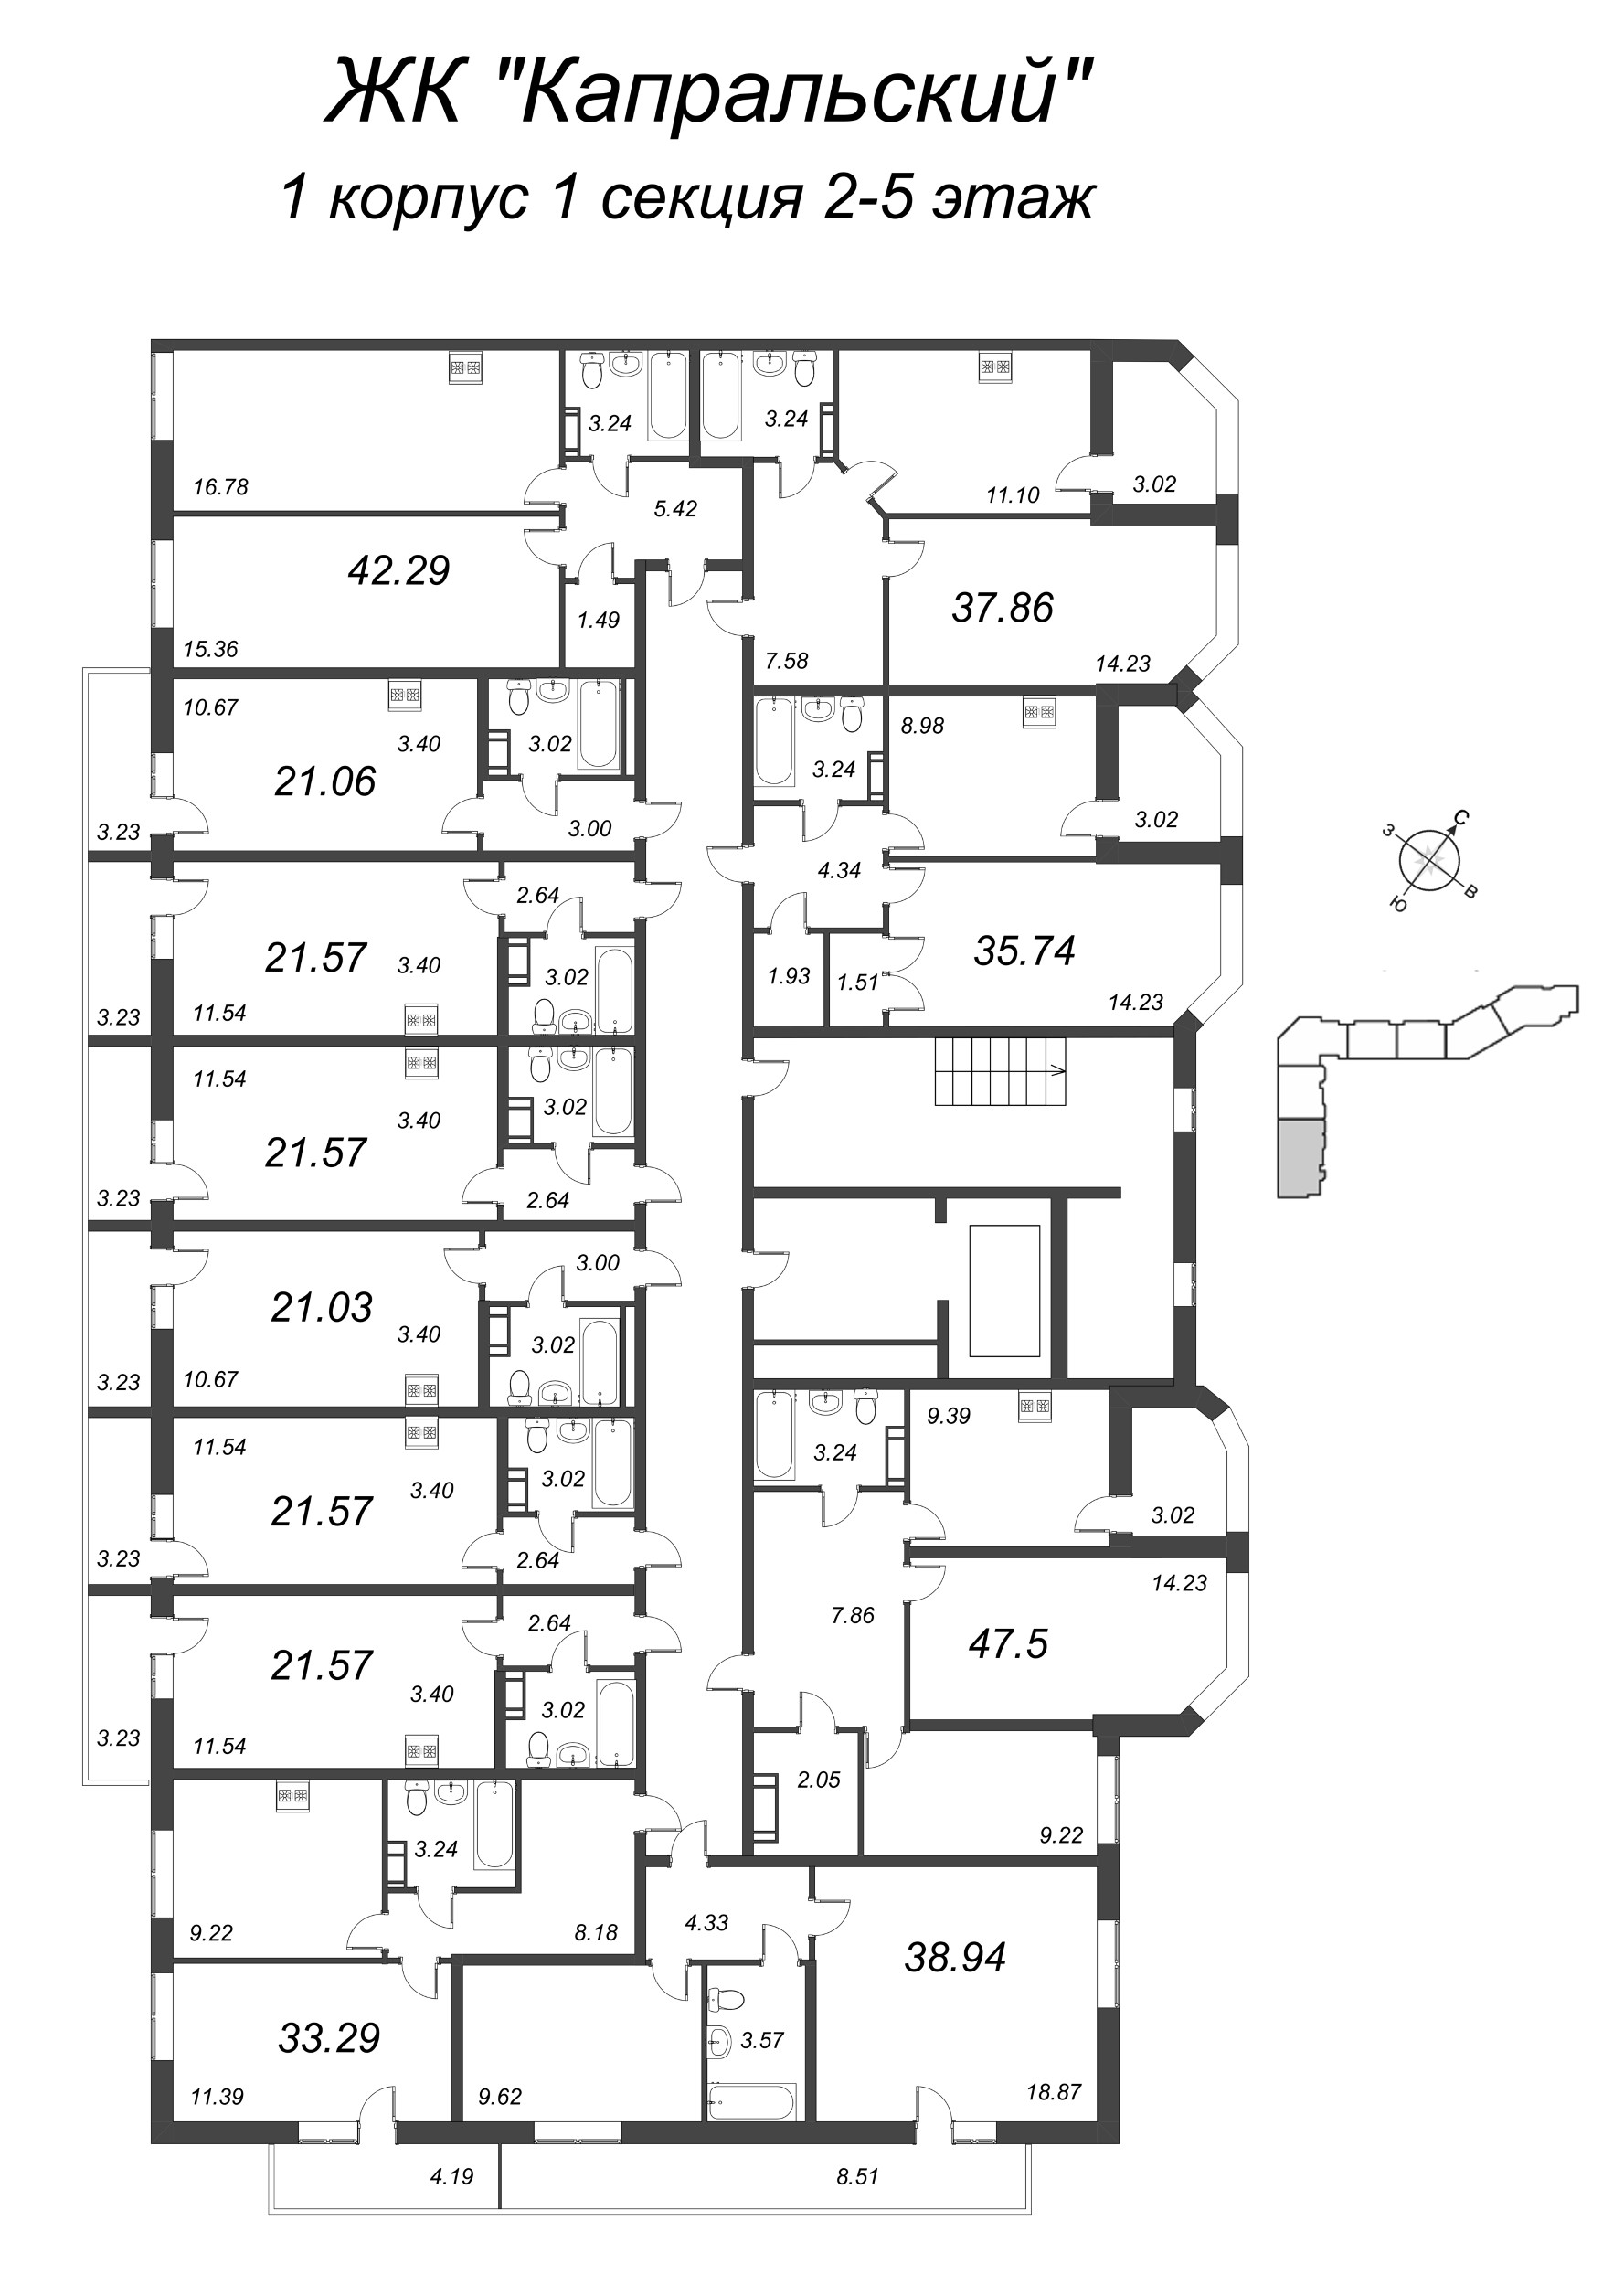 Квартира-студия, 21.06 м² в ЖК "Капральский" - планировка этажа